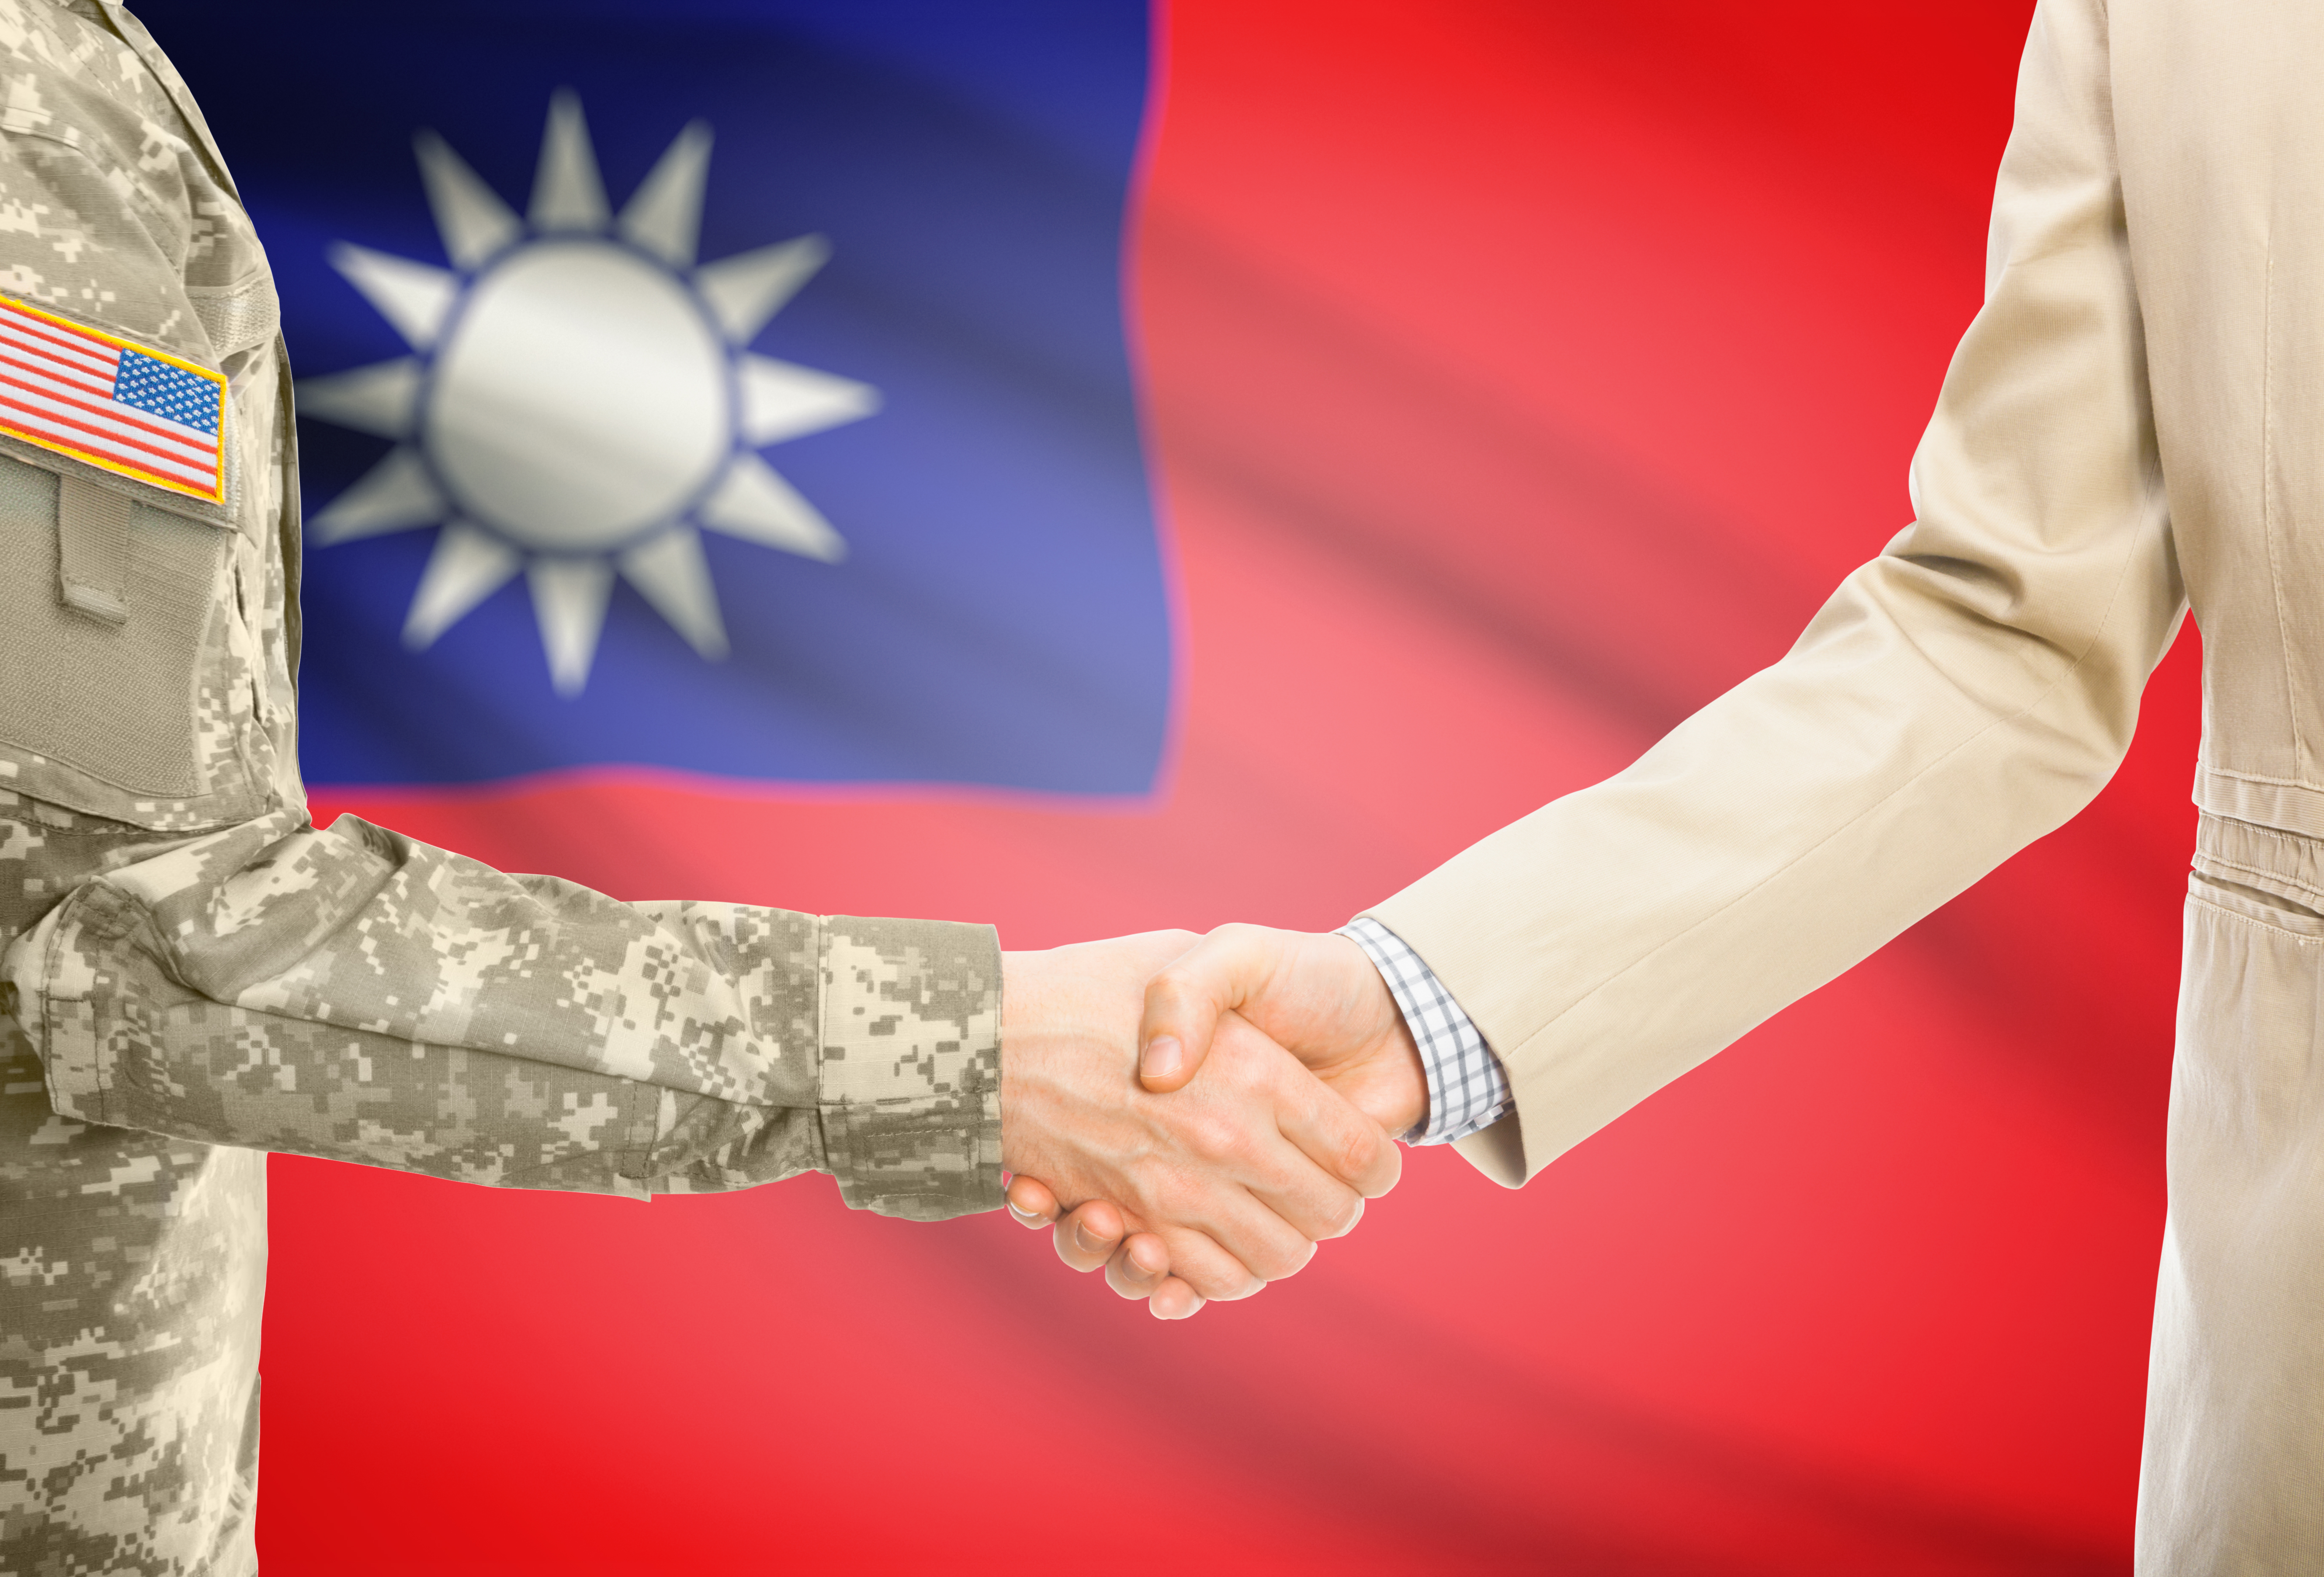 美 國 兩 大 黨 都 有 共 識 要 支 持 台 灣 。 ( 圖 片 來 源 ： i S t o c k ) 